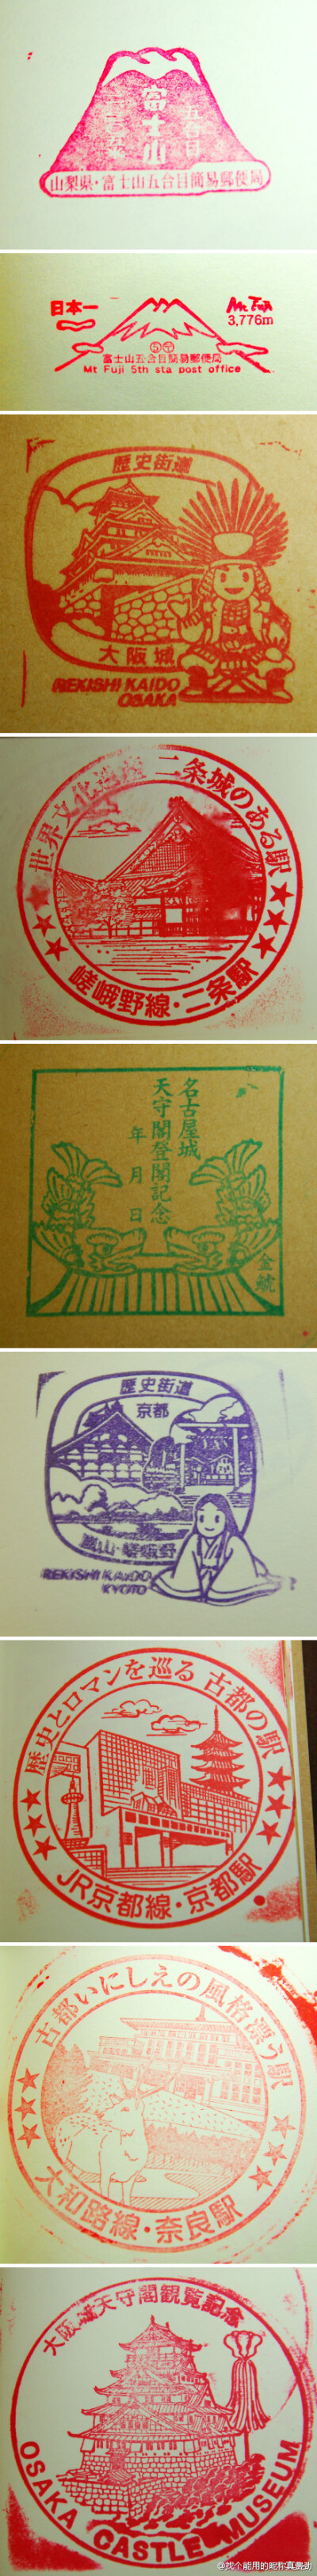 日本旅行期间收集到的印章